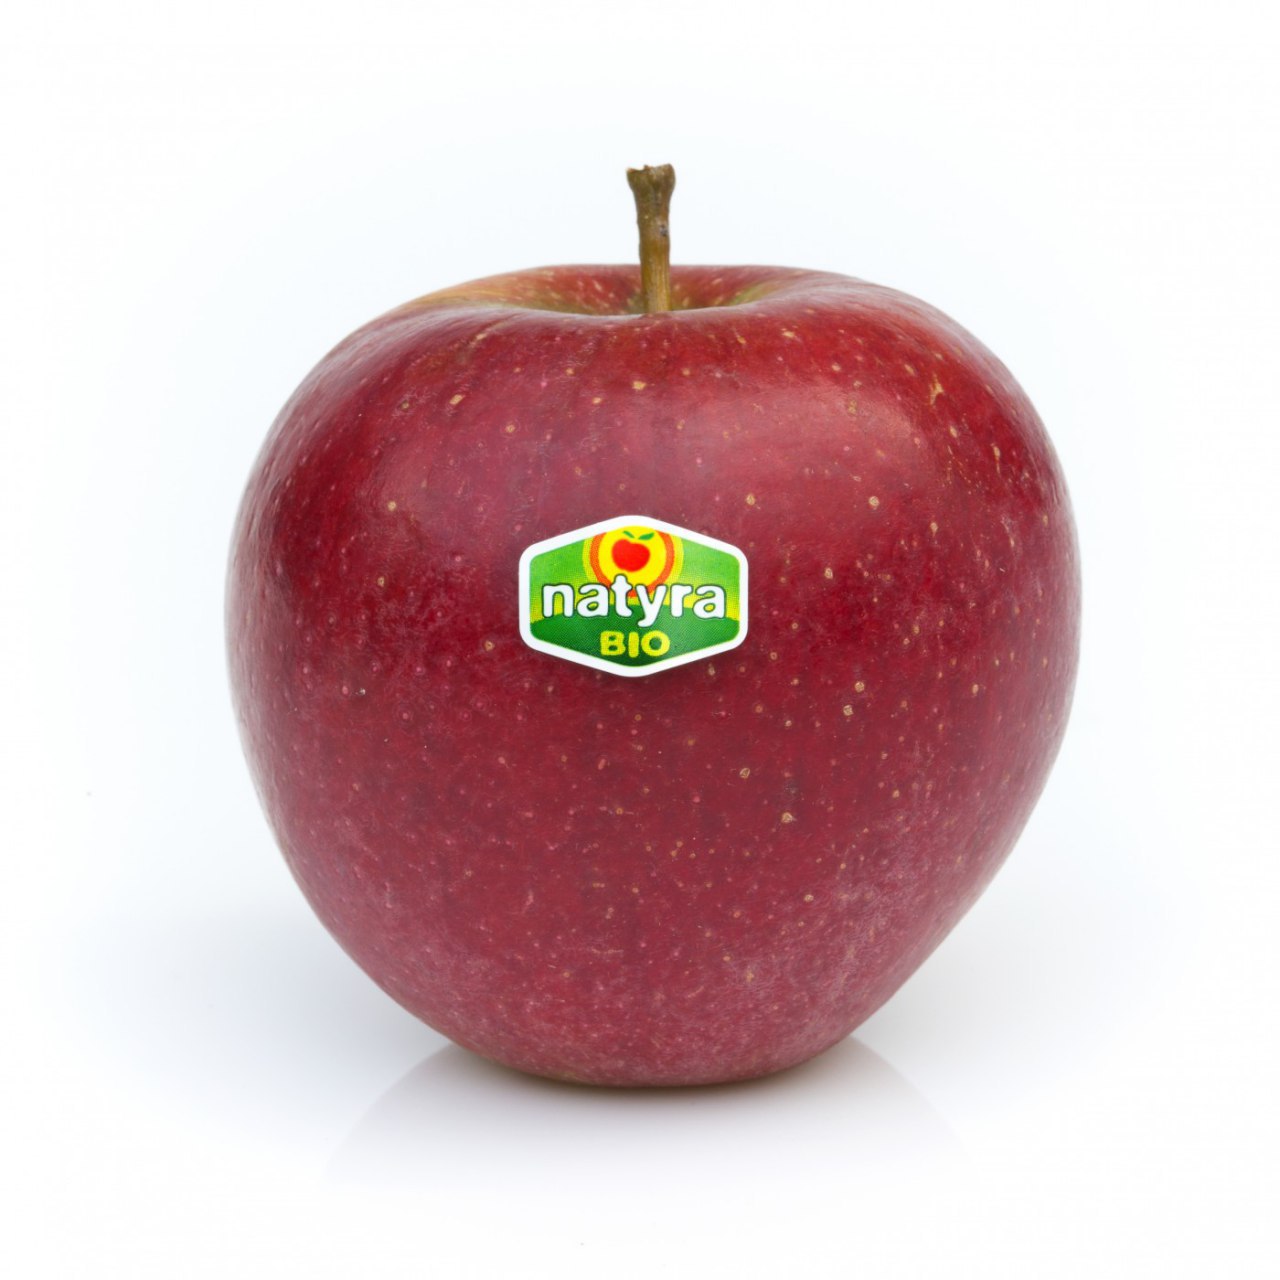 Эпоха «Галы» заканчивается? В Европе растет спрос на новые сорта яблок